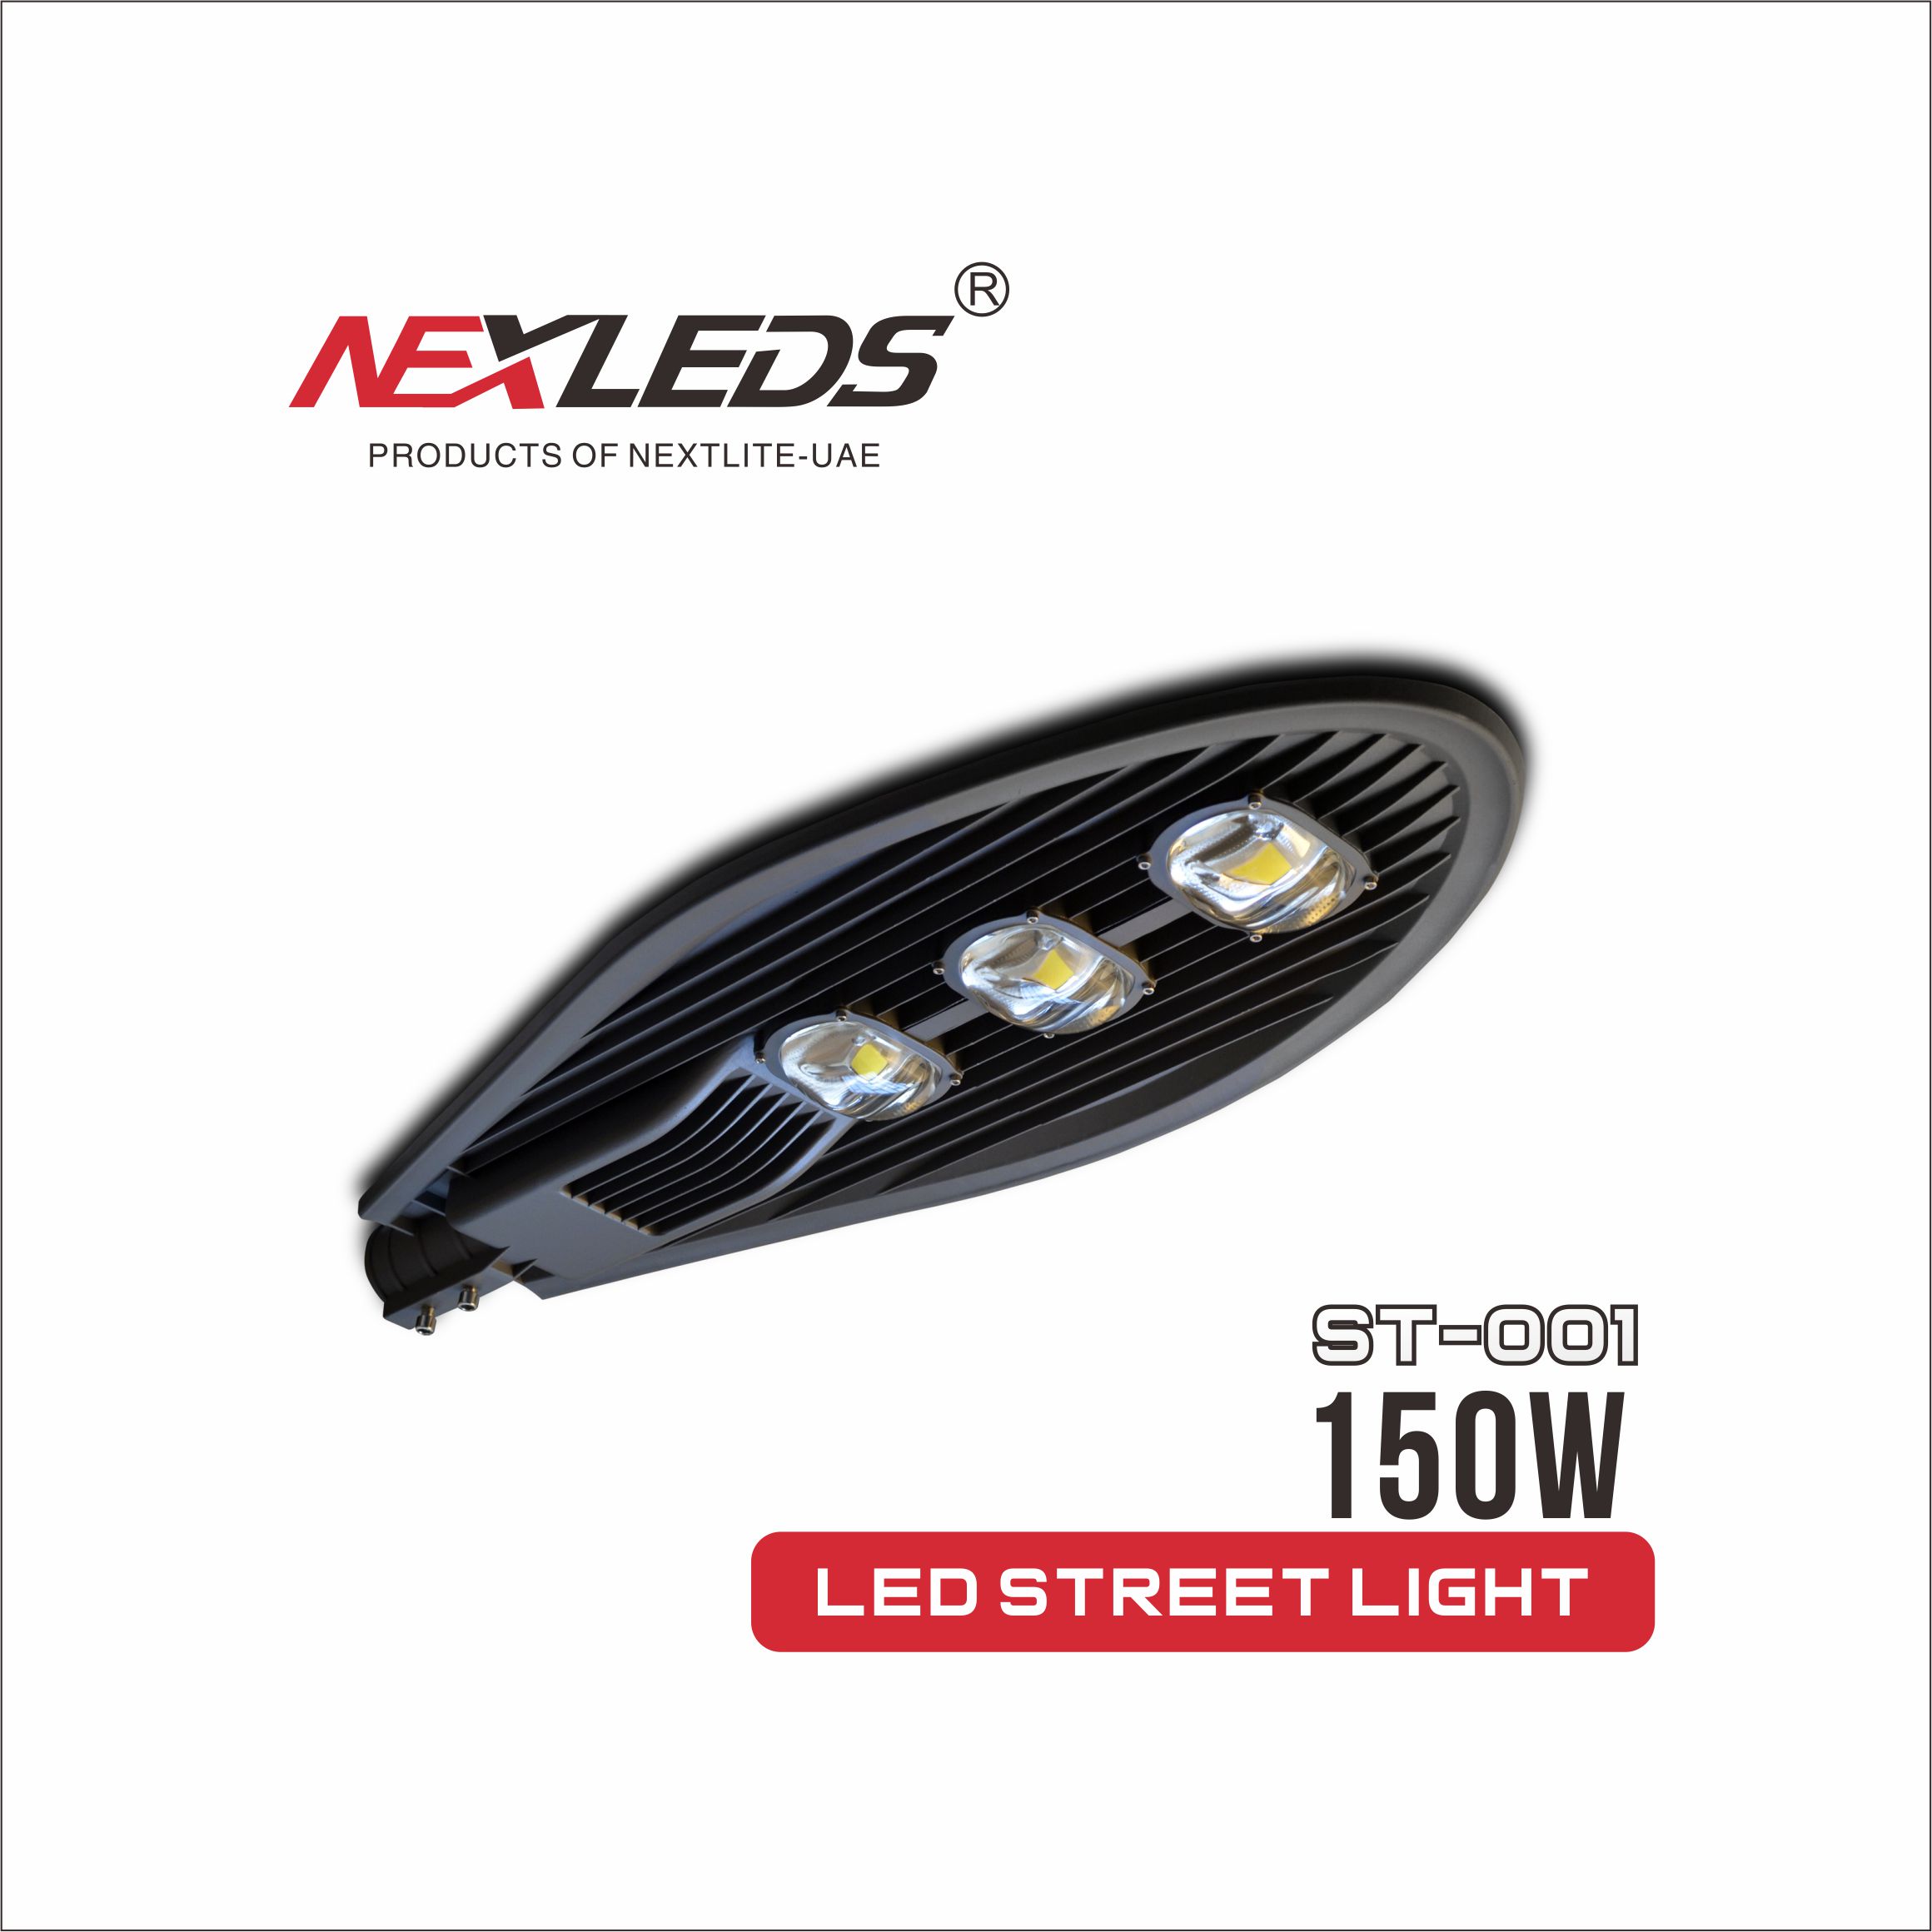 ST-001 STREET LAMP 100W/150W/250W